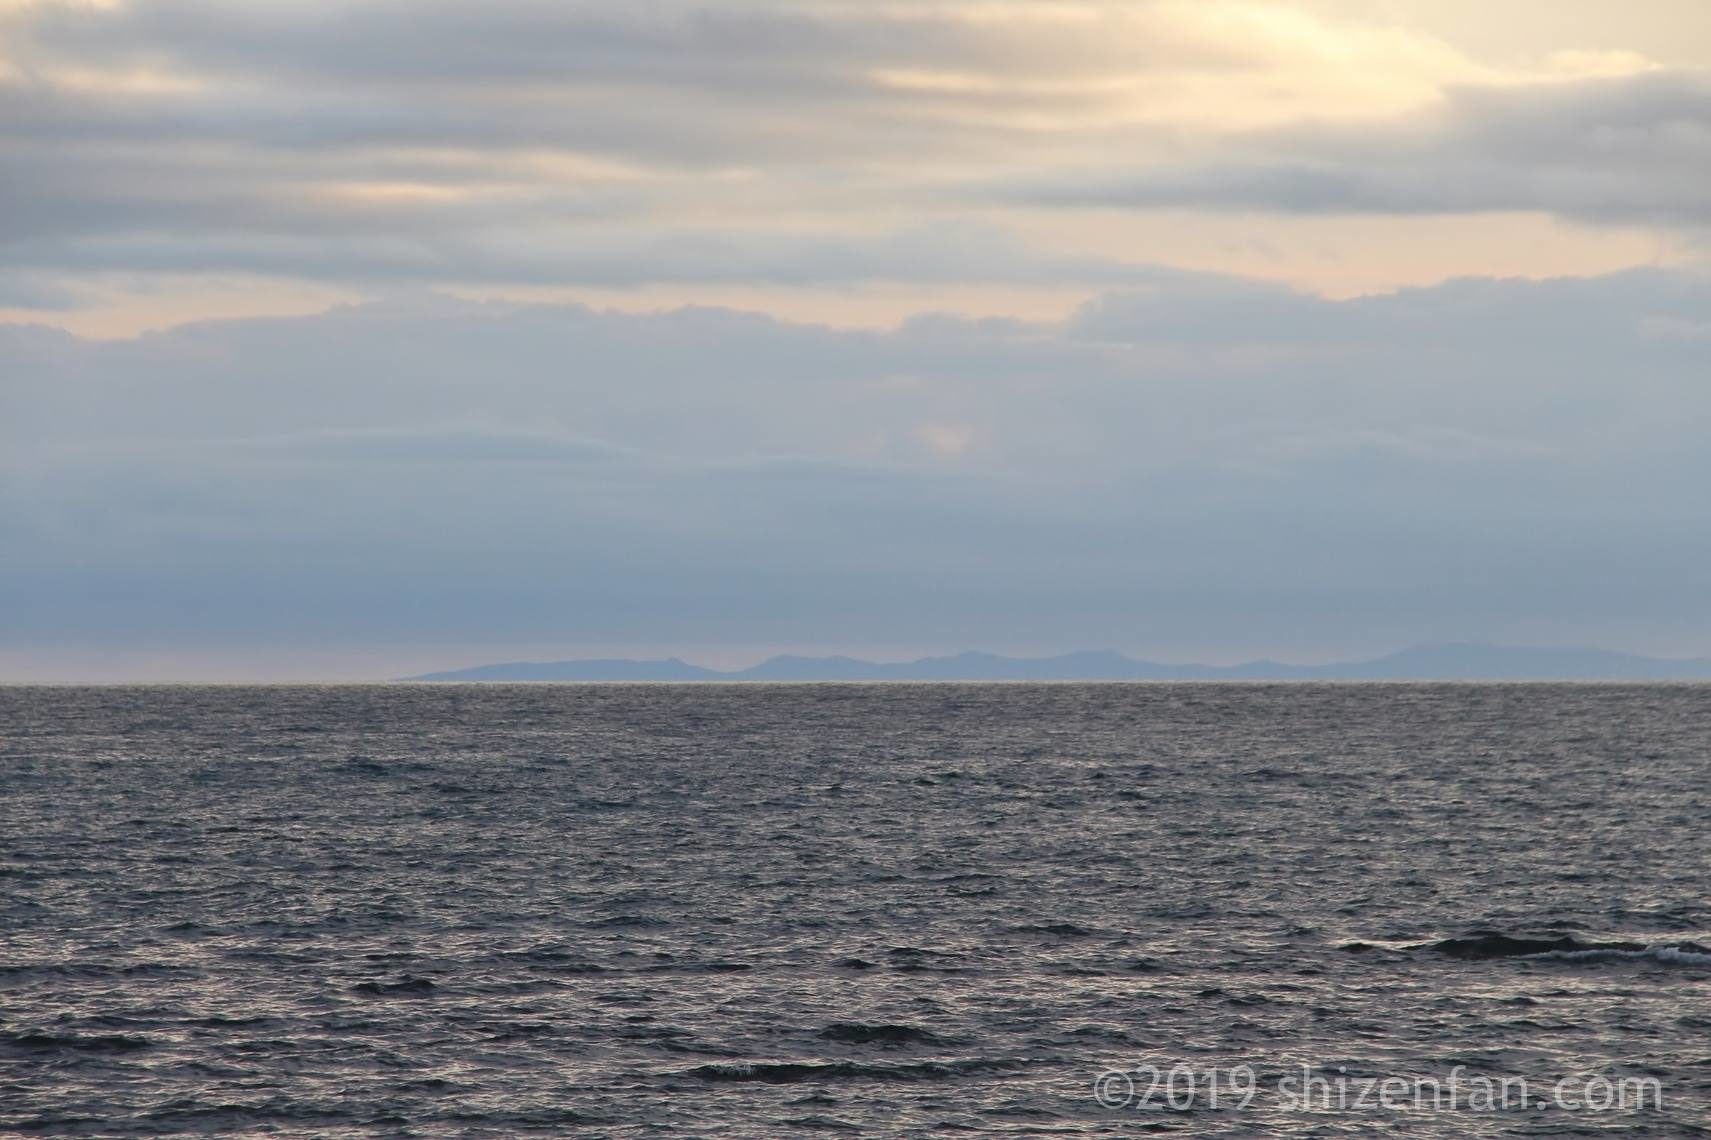 夕暮れの稚内のノシャップ岬、海の向こうに見える島の陰